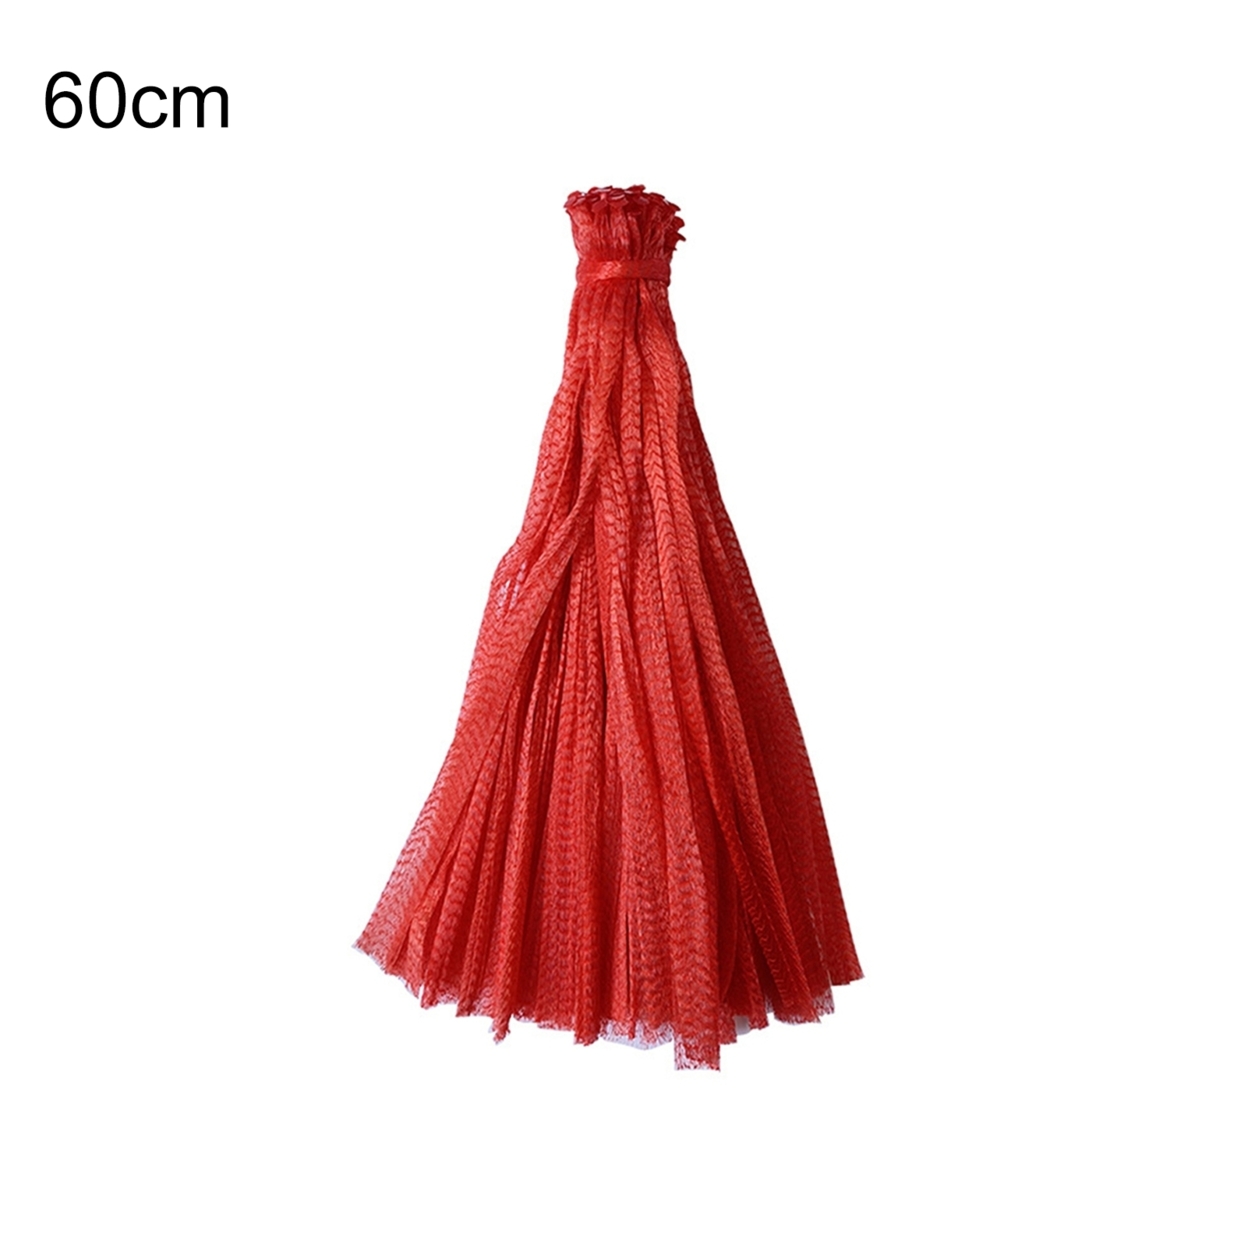 100Pcs Mesh Woven Bags Reusable Breathable Plastic Multifunctional Fruit Growth String Net Sacks for Garden - 60cm